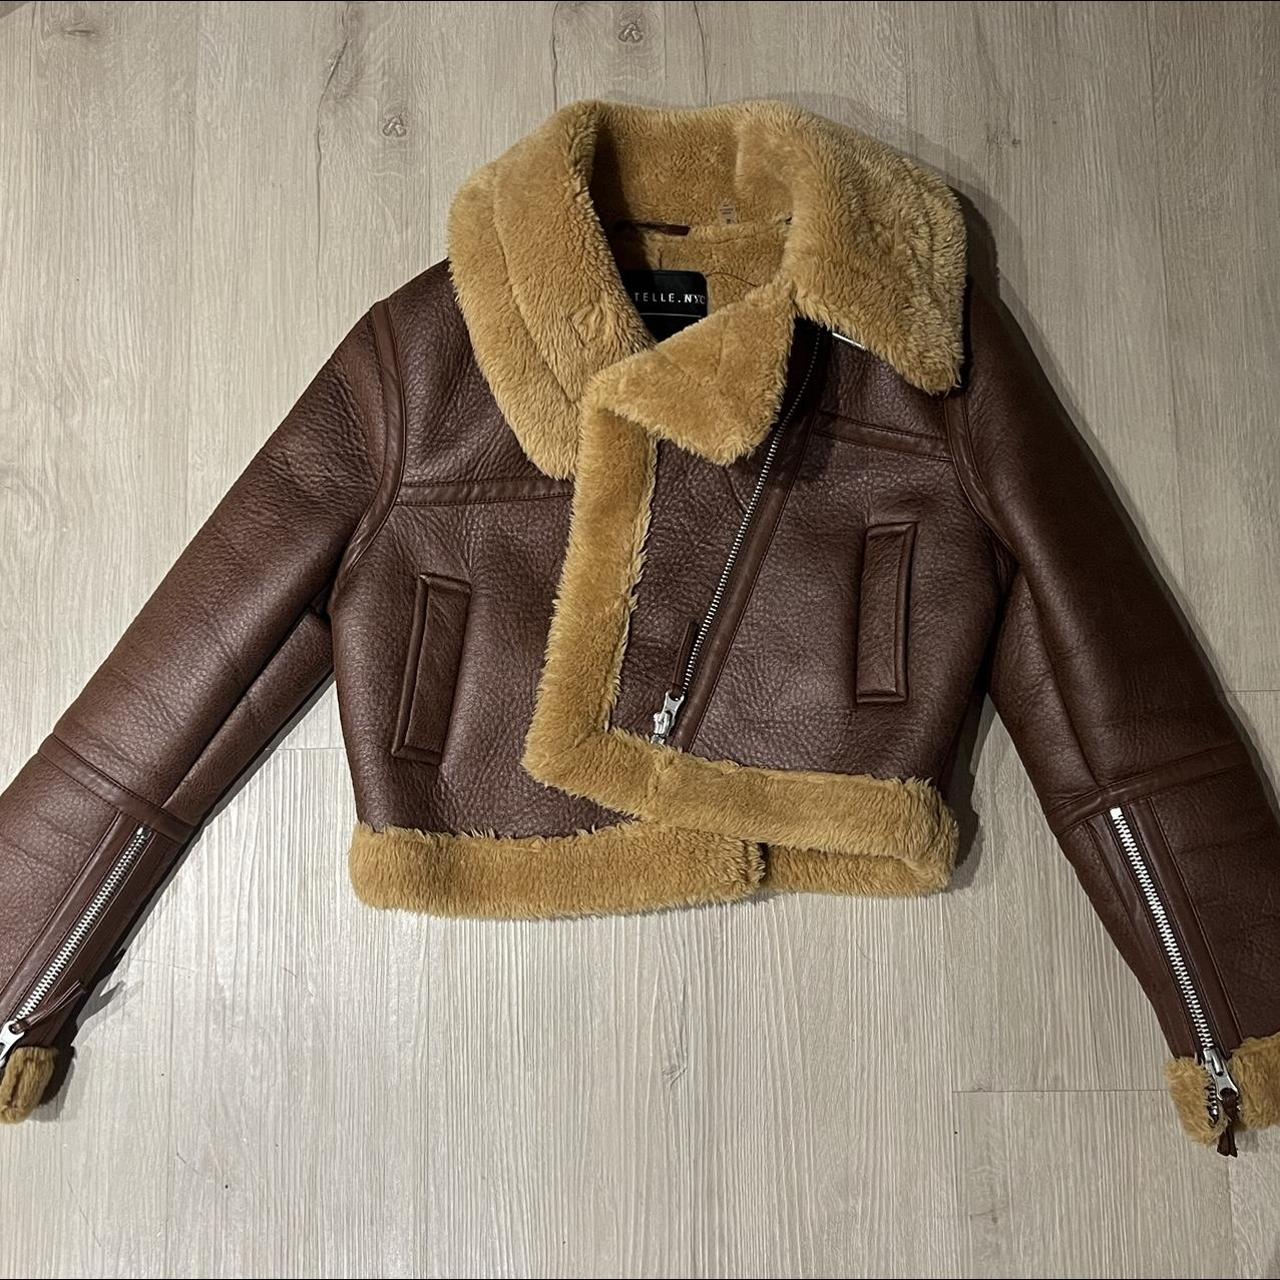 Brown vintage cropped Shearling coat #vintage... - Depop